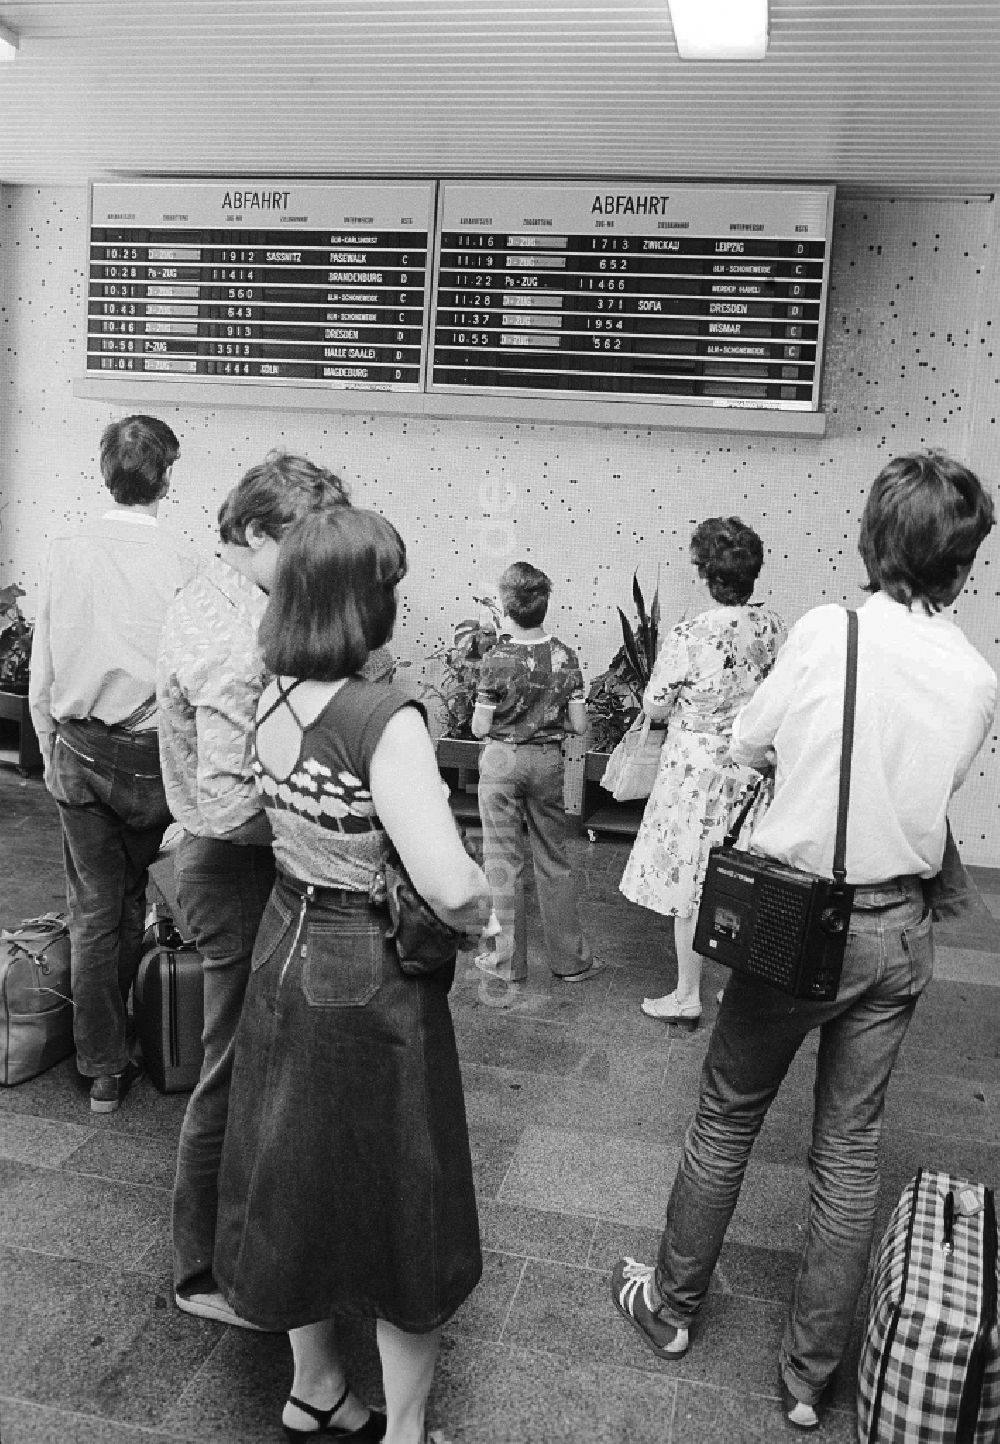 DDR-Bildarchiv: Schönefeld - Fahrgäste informieren sich an der Anzeigetafel über Abfahrt und Ankunft der Züge im Bahnhof Flughafen Berlin-Schönefeld in Schönefeld in Brandenburg in der DDR